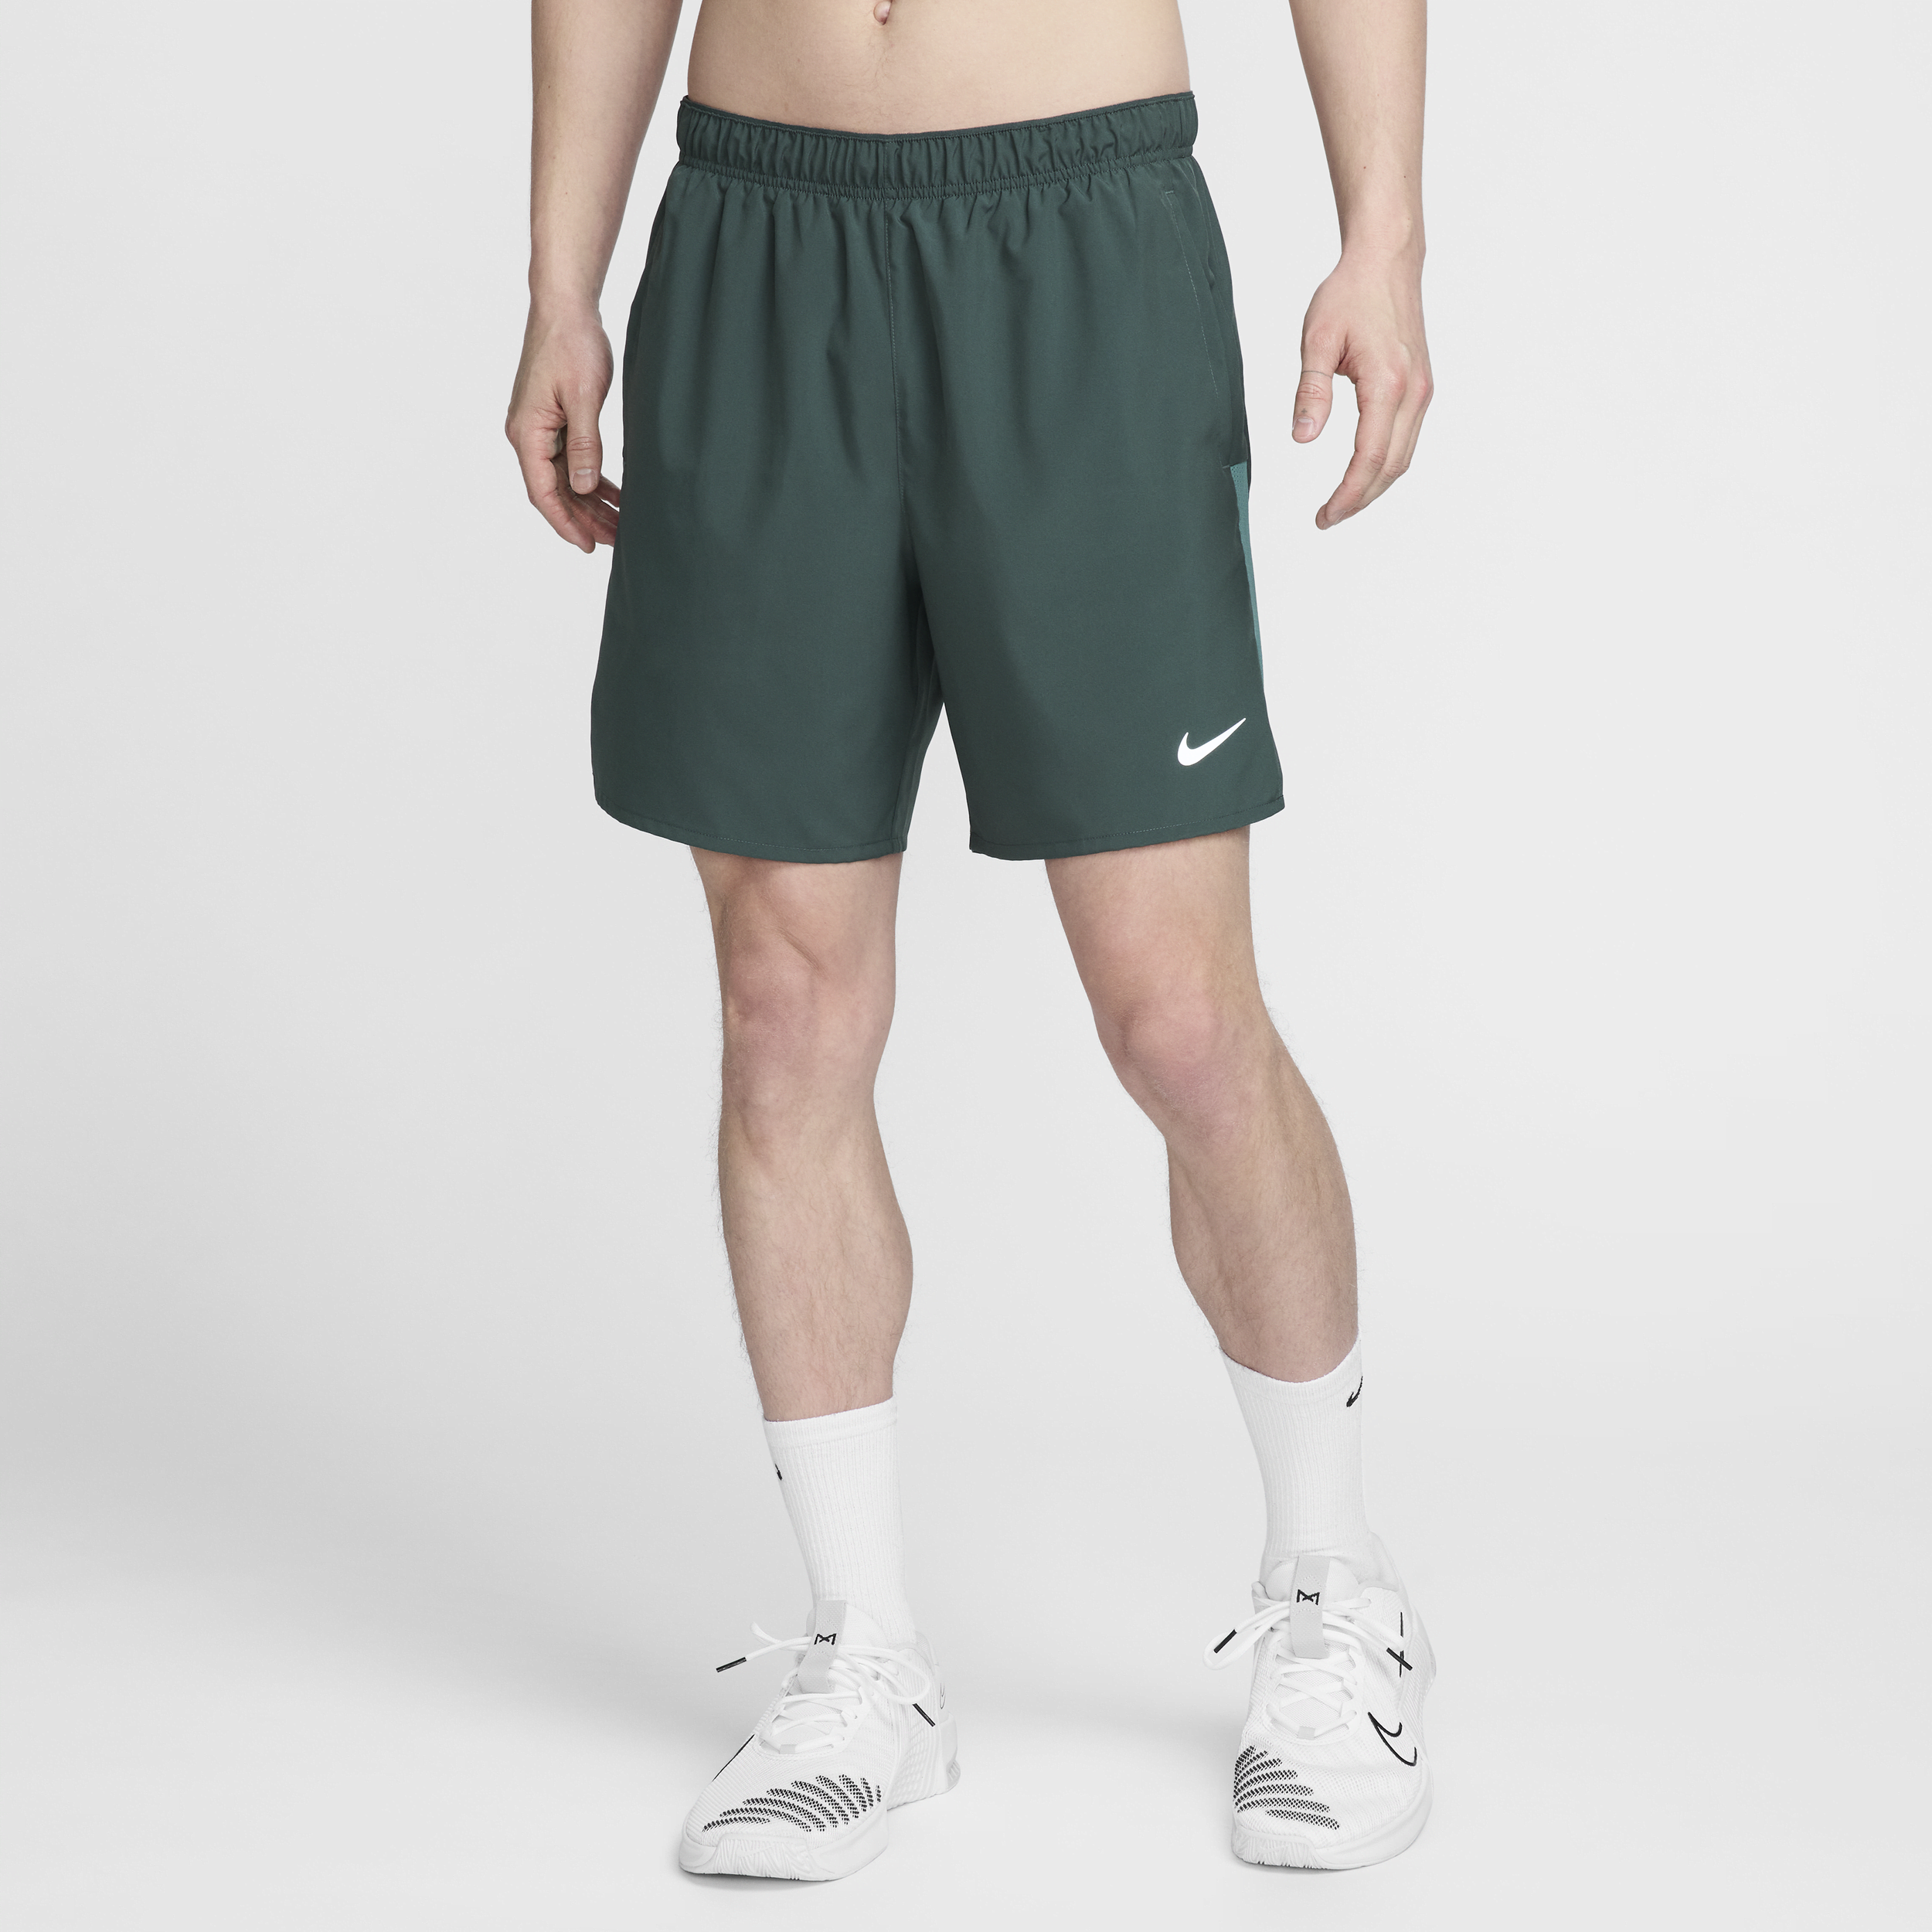 Nike Challenger-Dri-FIT-2-i-1-løbeshorts (18 cm) til mænd - grøn